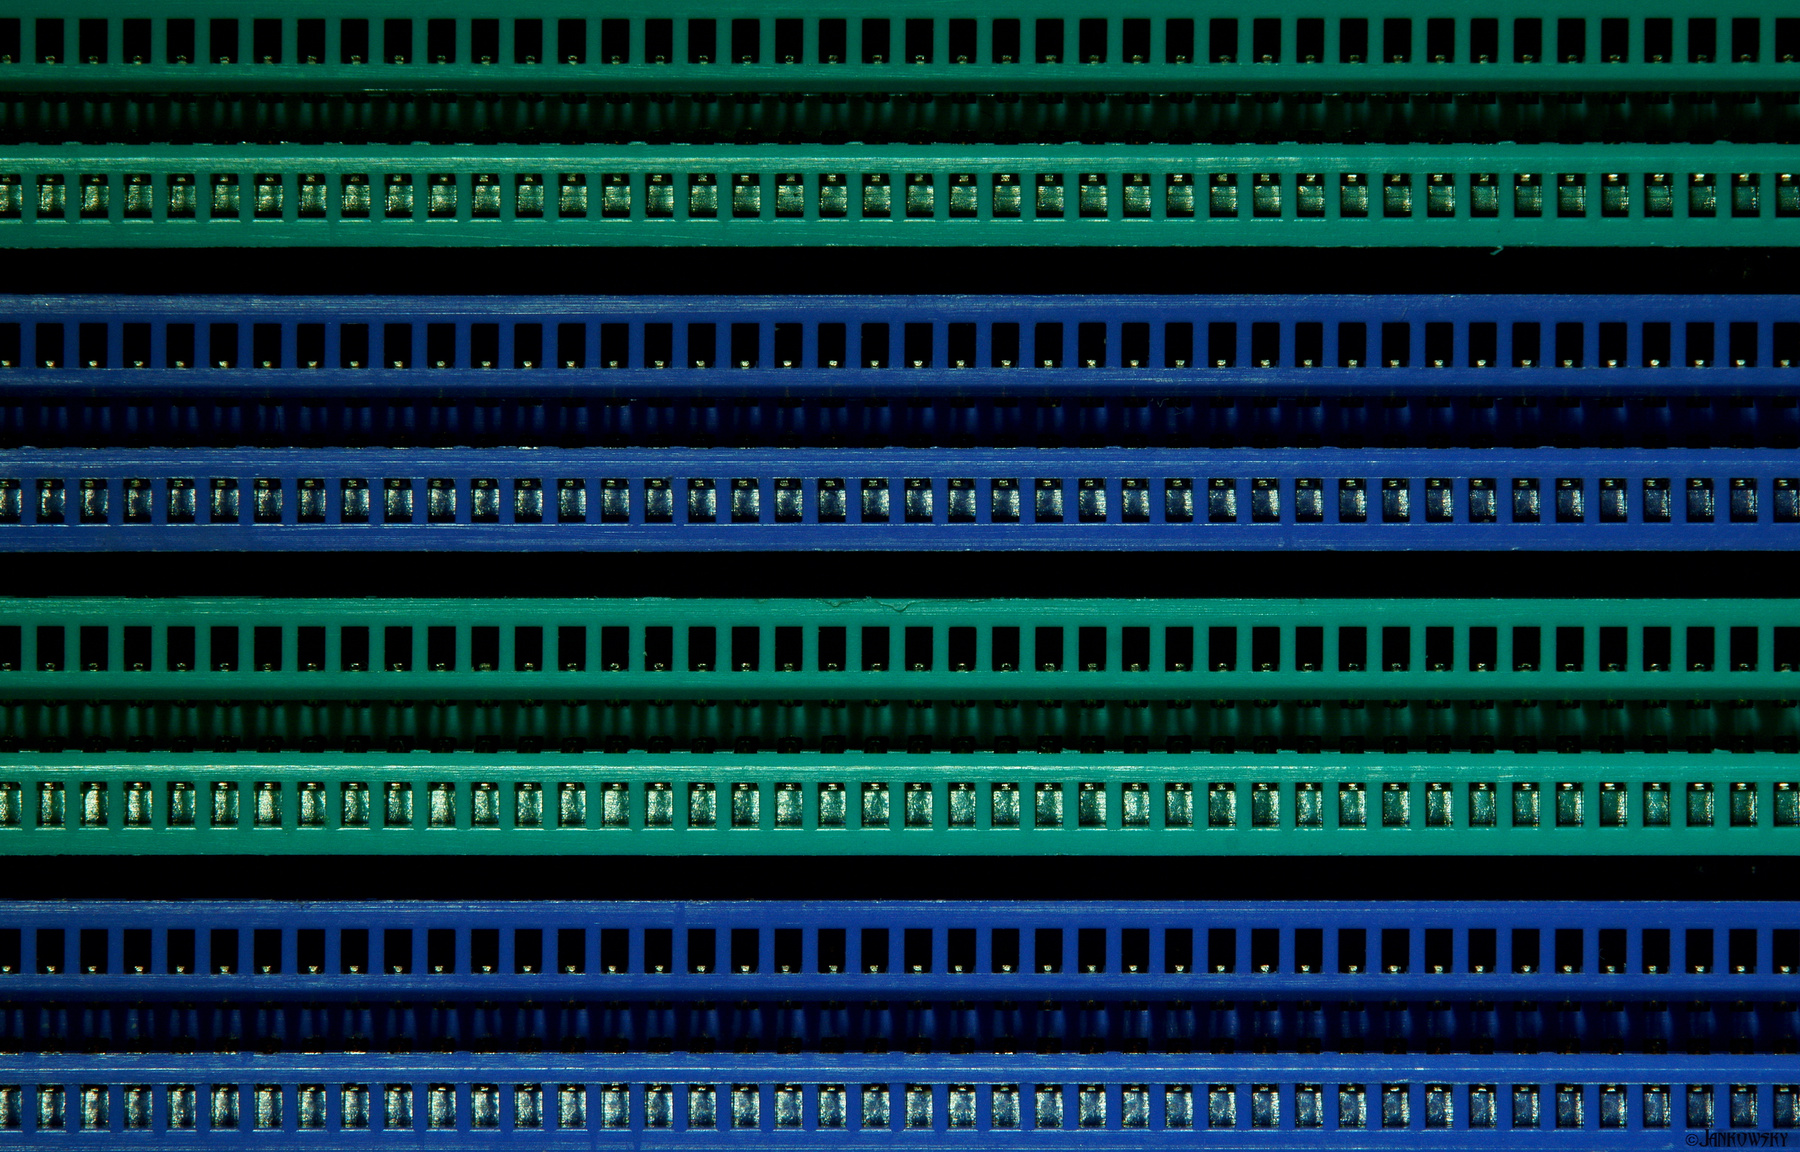 Хранилище воспоминаний - абстрактное техно техно абстракция минимализм два цвета память электроника материнская плата микросхема хранилище tamron 180mm macro концептуальное макро